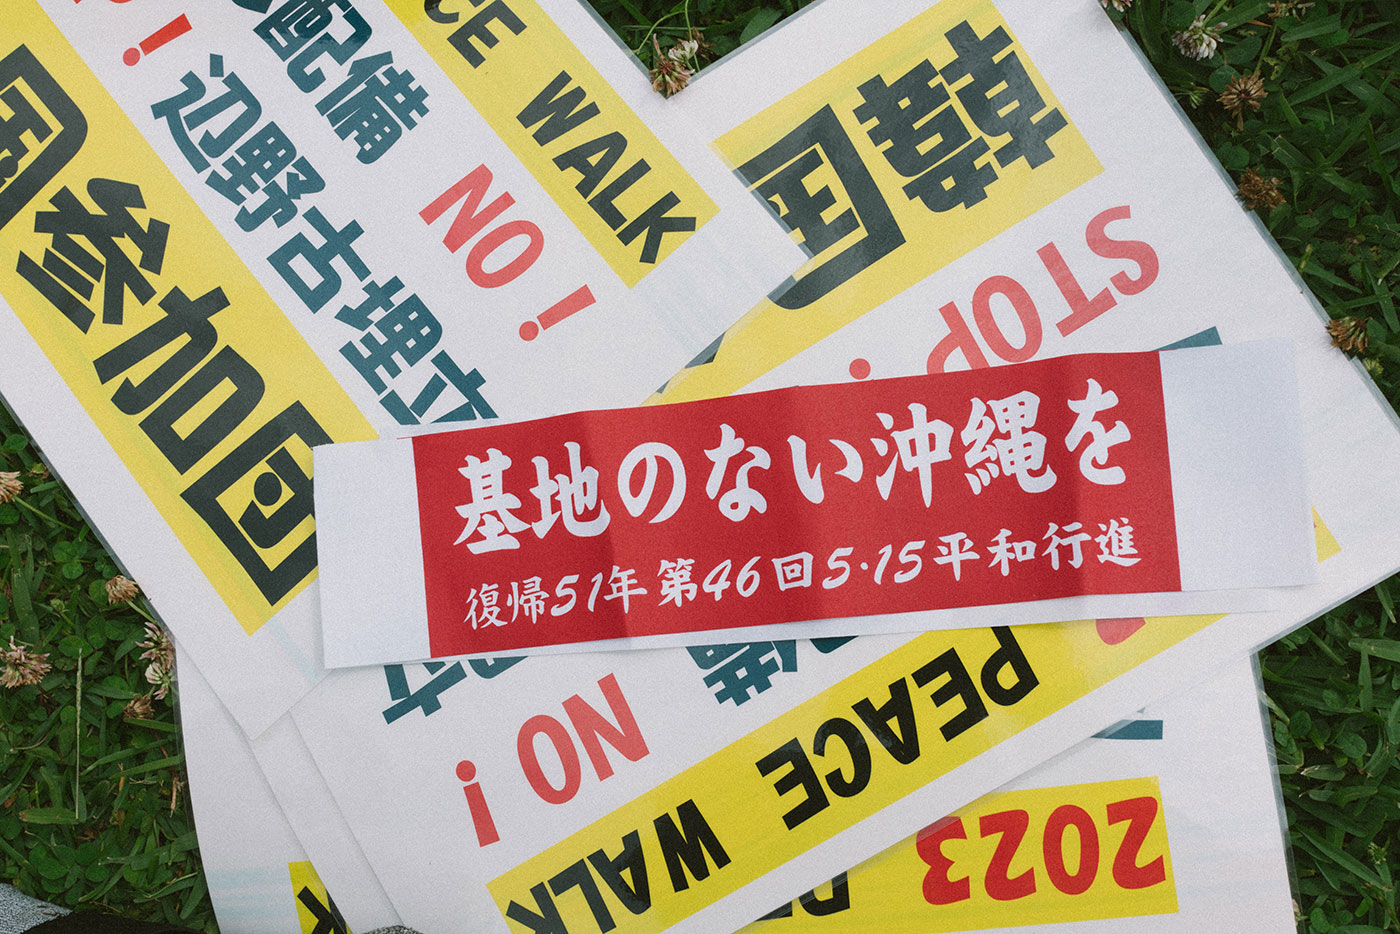 바닥에 일본어로 적힌 여러 피켓이 놓여있다. 뒤쪽에 있는 피켓에는 '2023 peace walk, 한국참가단'이라고 적혀있고, 앞쪽에 있는 피켓에는 '기지가 없는 오키나와를, 복귀 51년 제46회 5.15 평화행진'이라고 적혀있다.